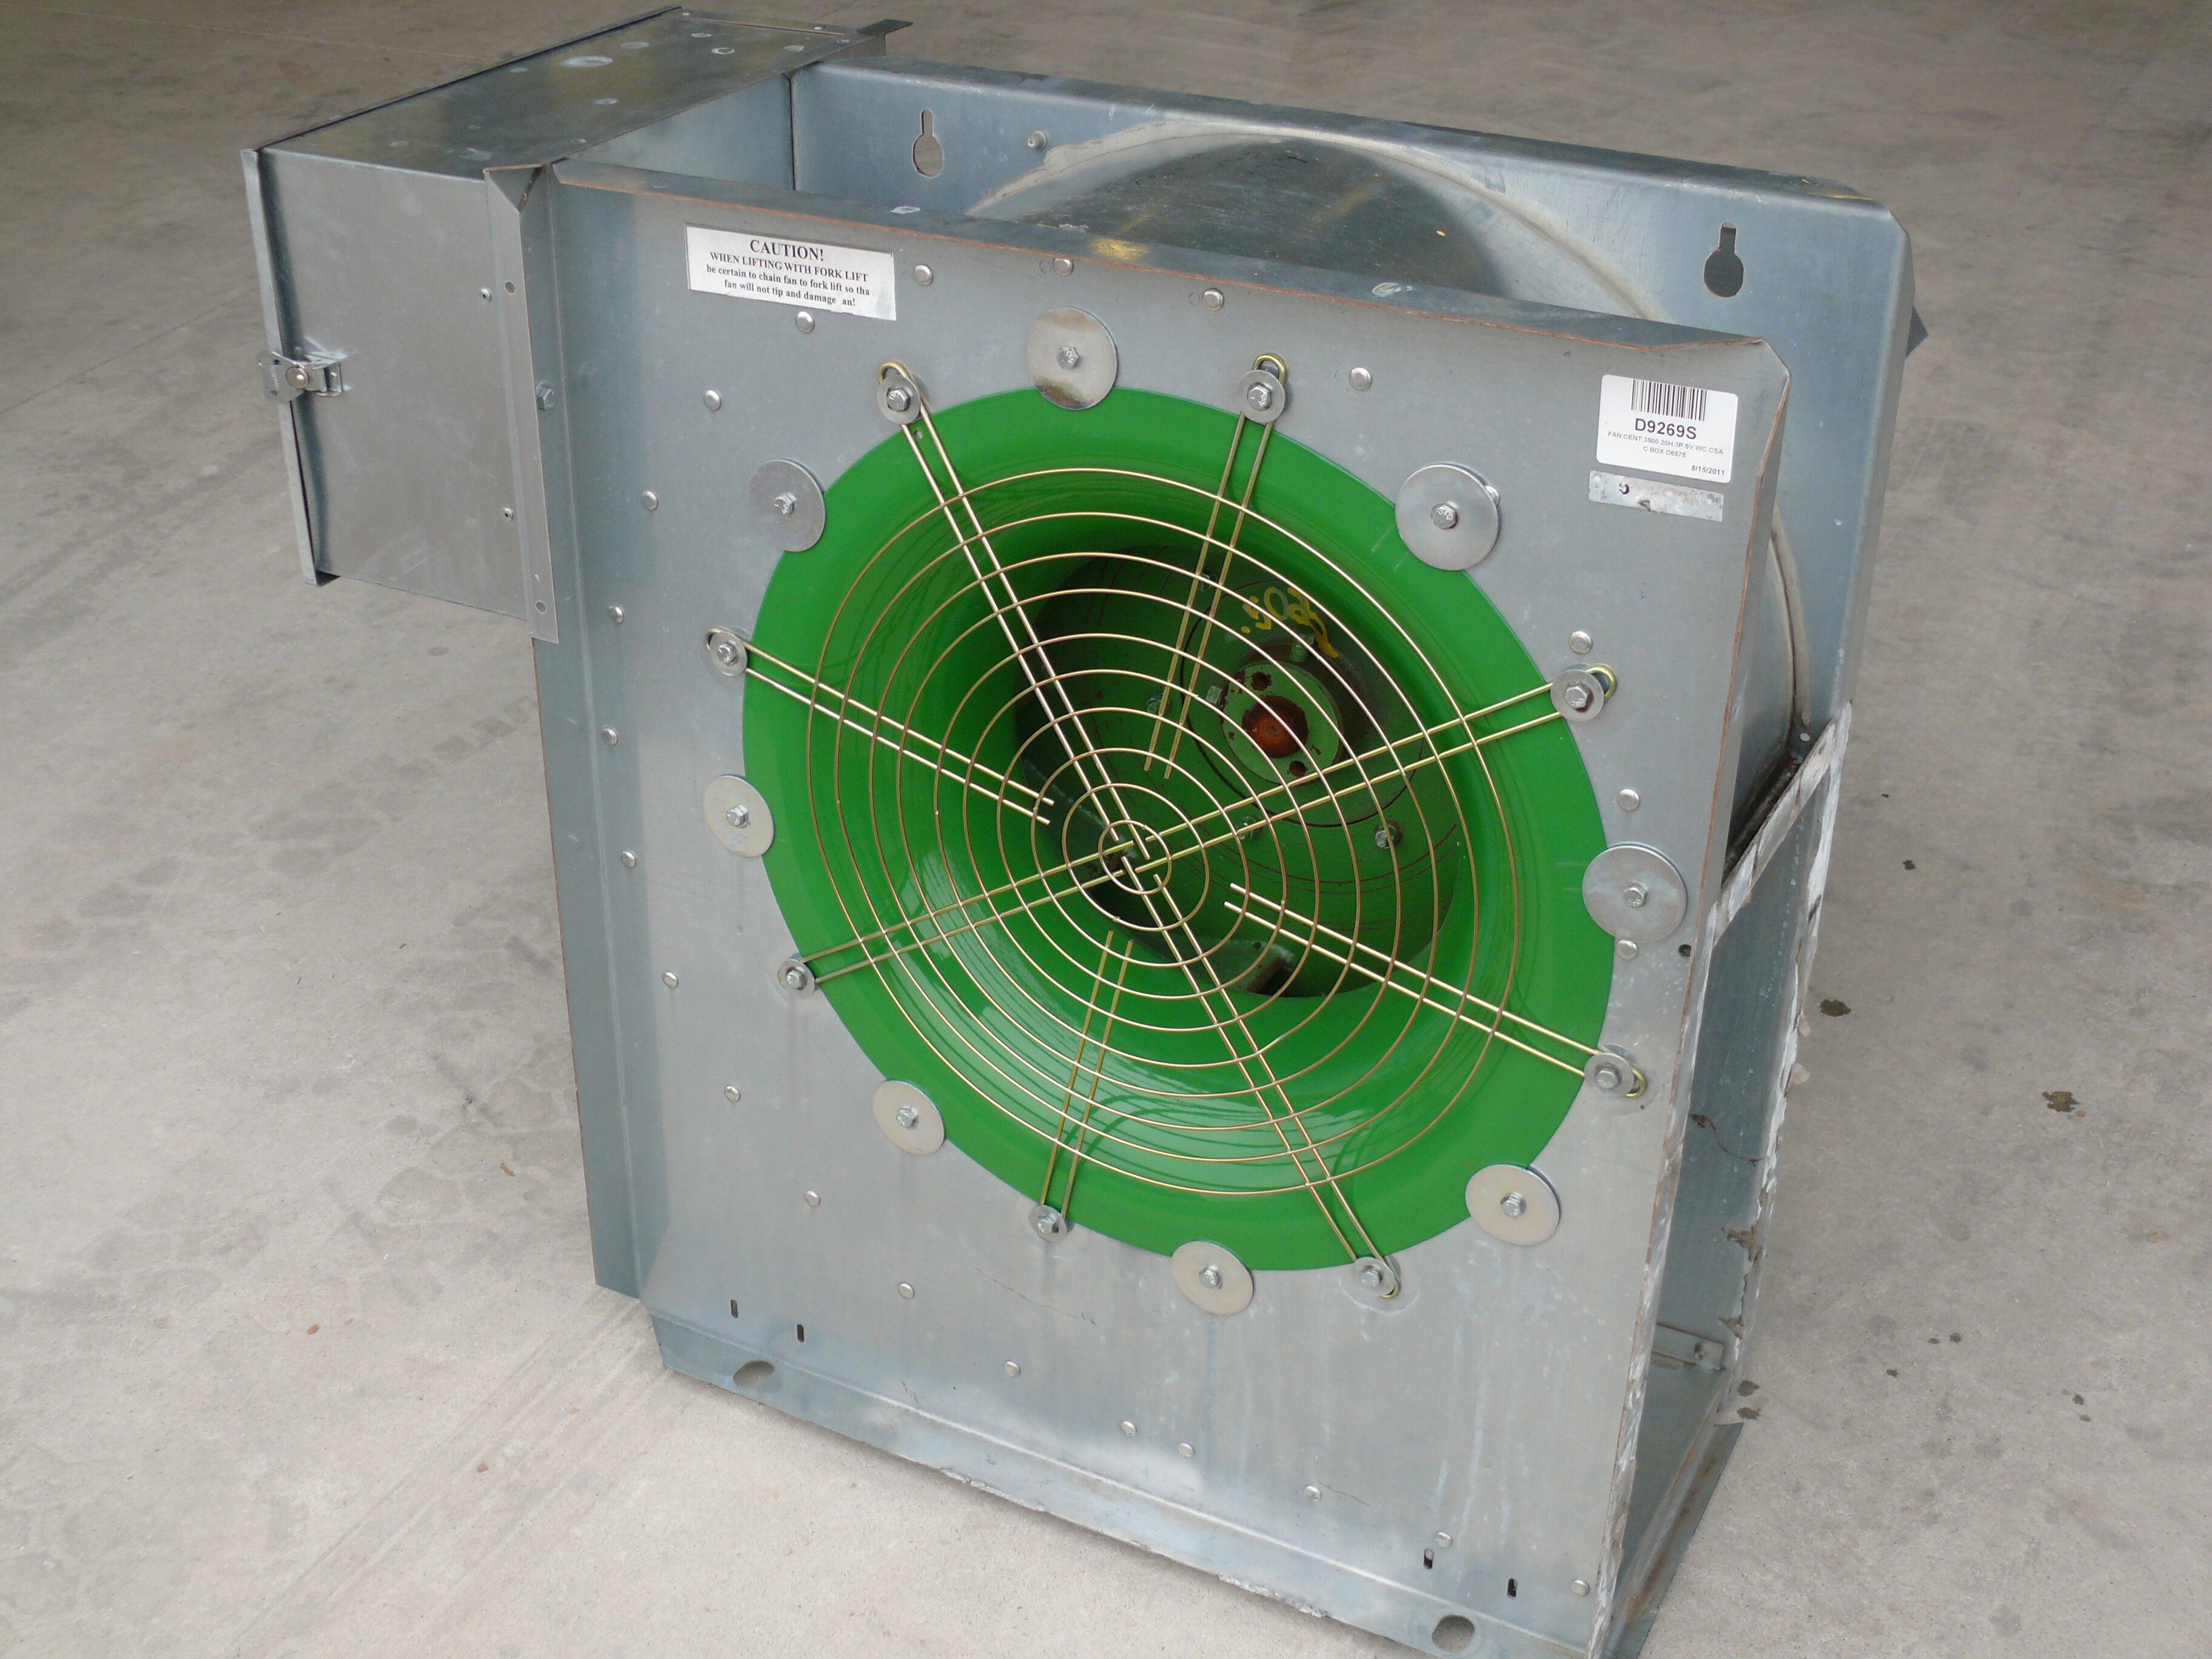 A centrifugal fan